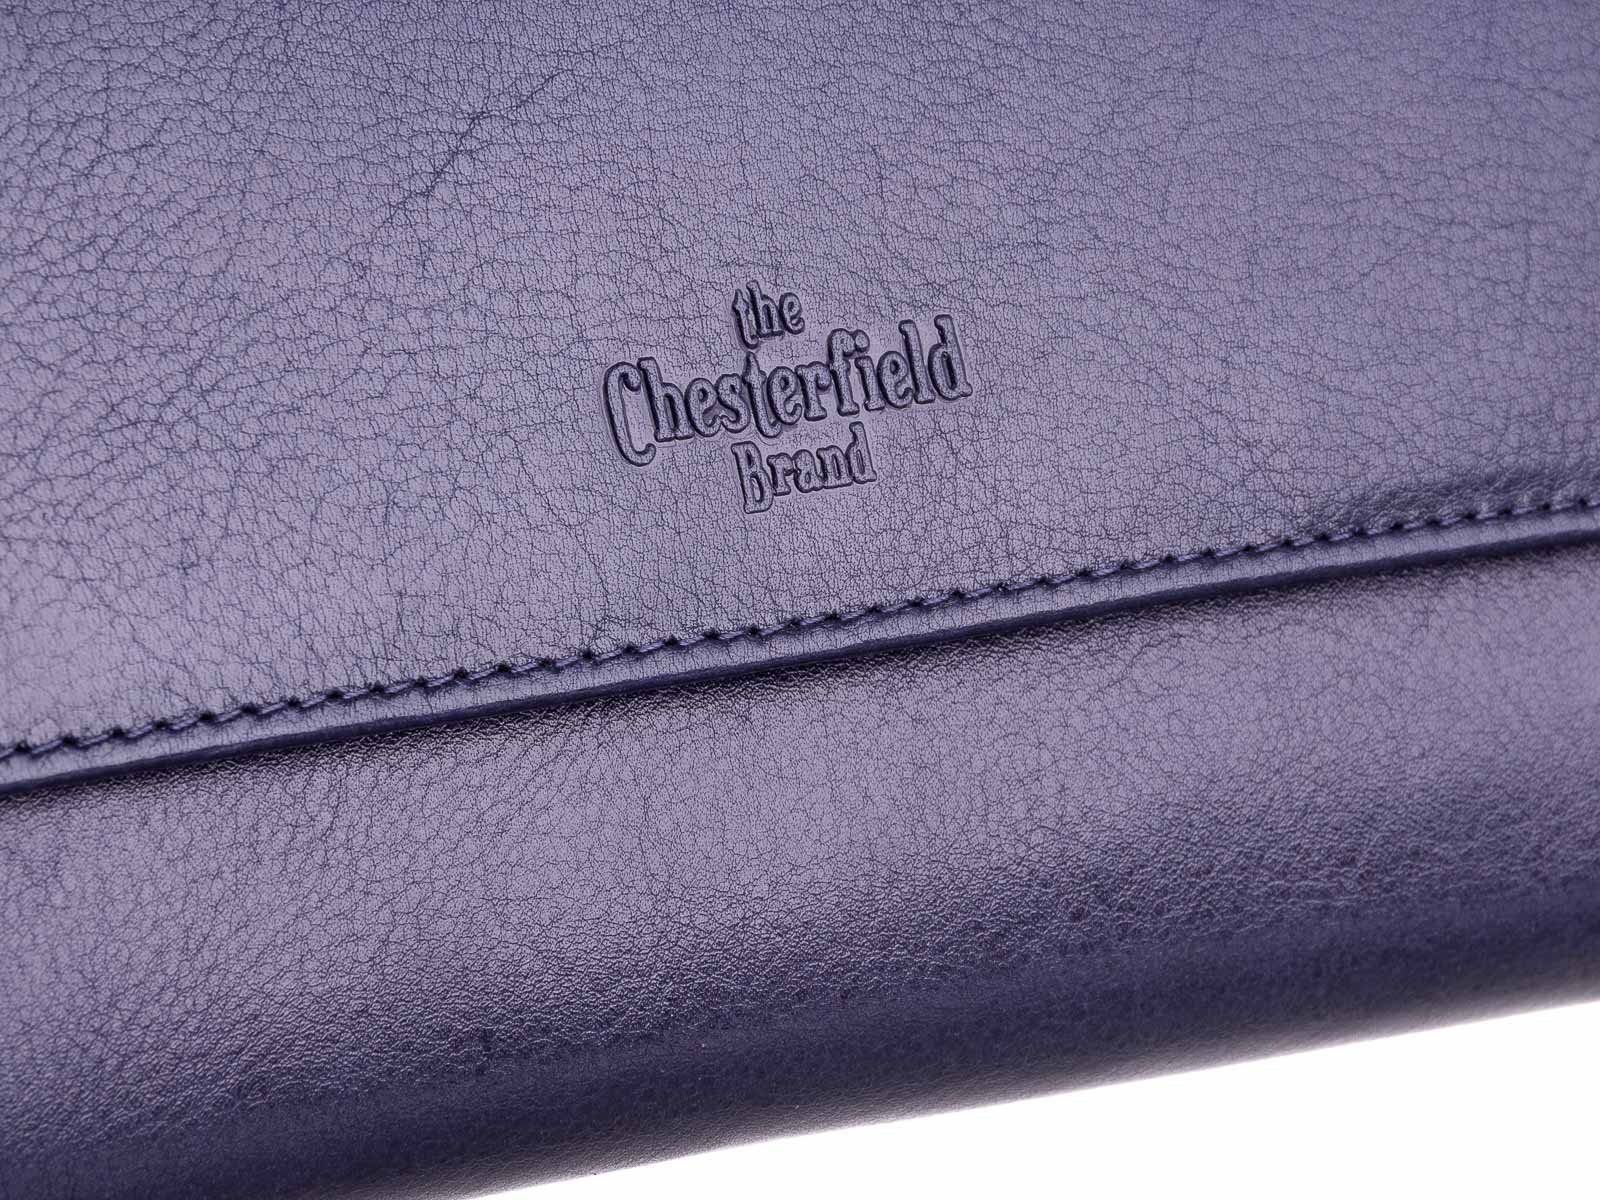 Geldbörse Portemonnaie The C080315 Brand Chesterfield Brand Leder Echtleder The Chesterfield Navy (1-tlg),